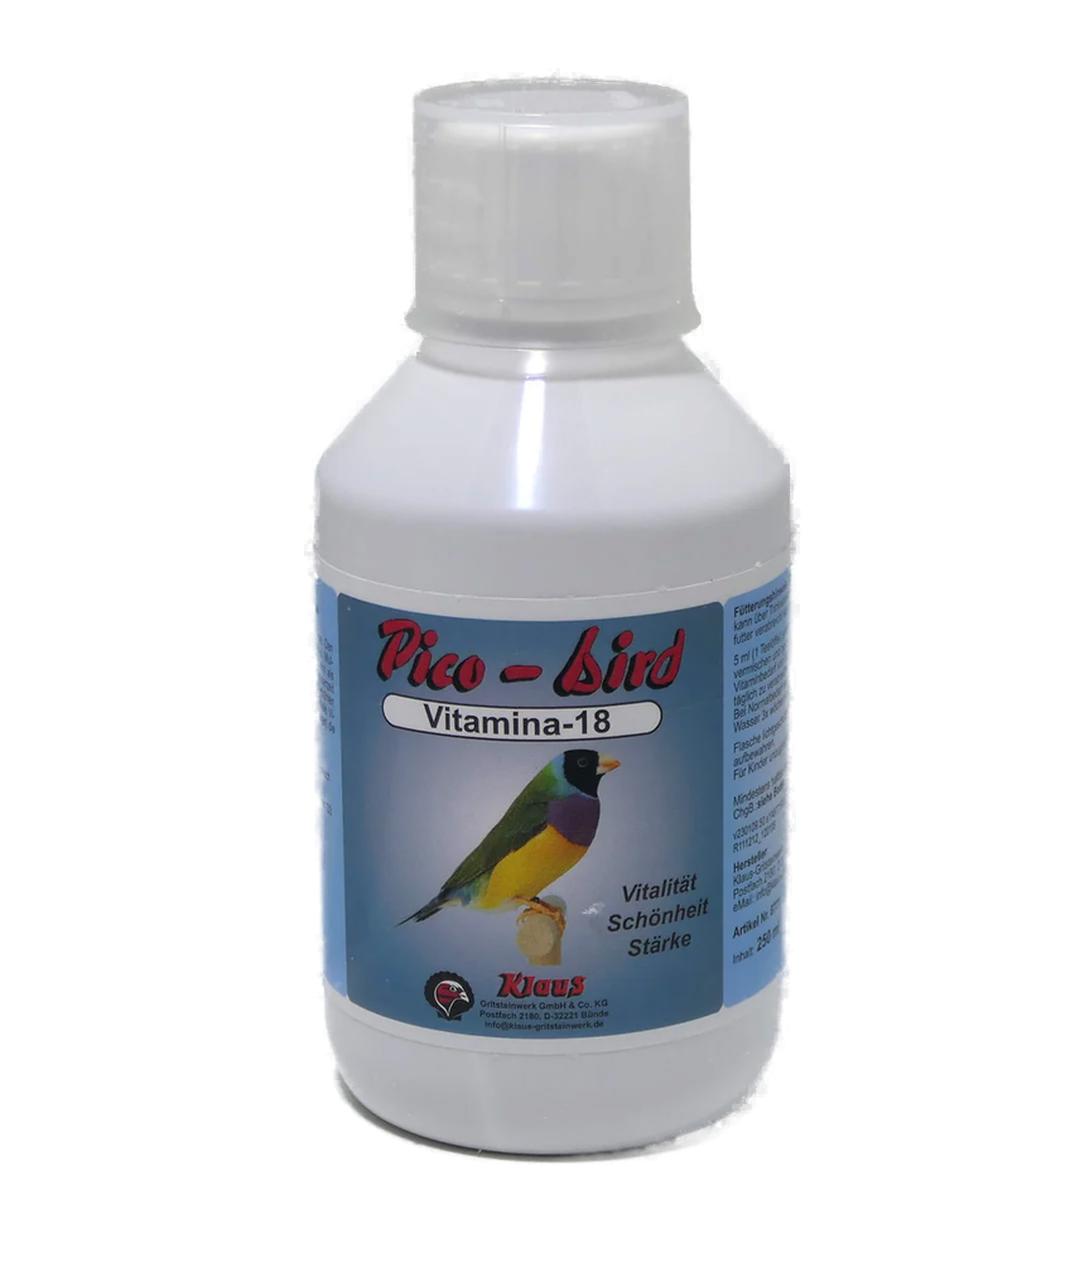 Pico-Bird Vitamina 18 von Klaus